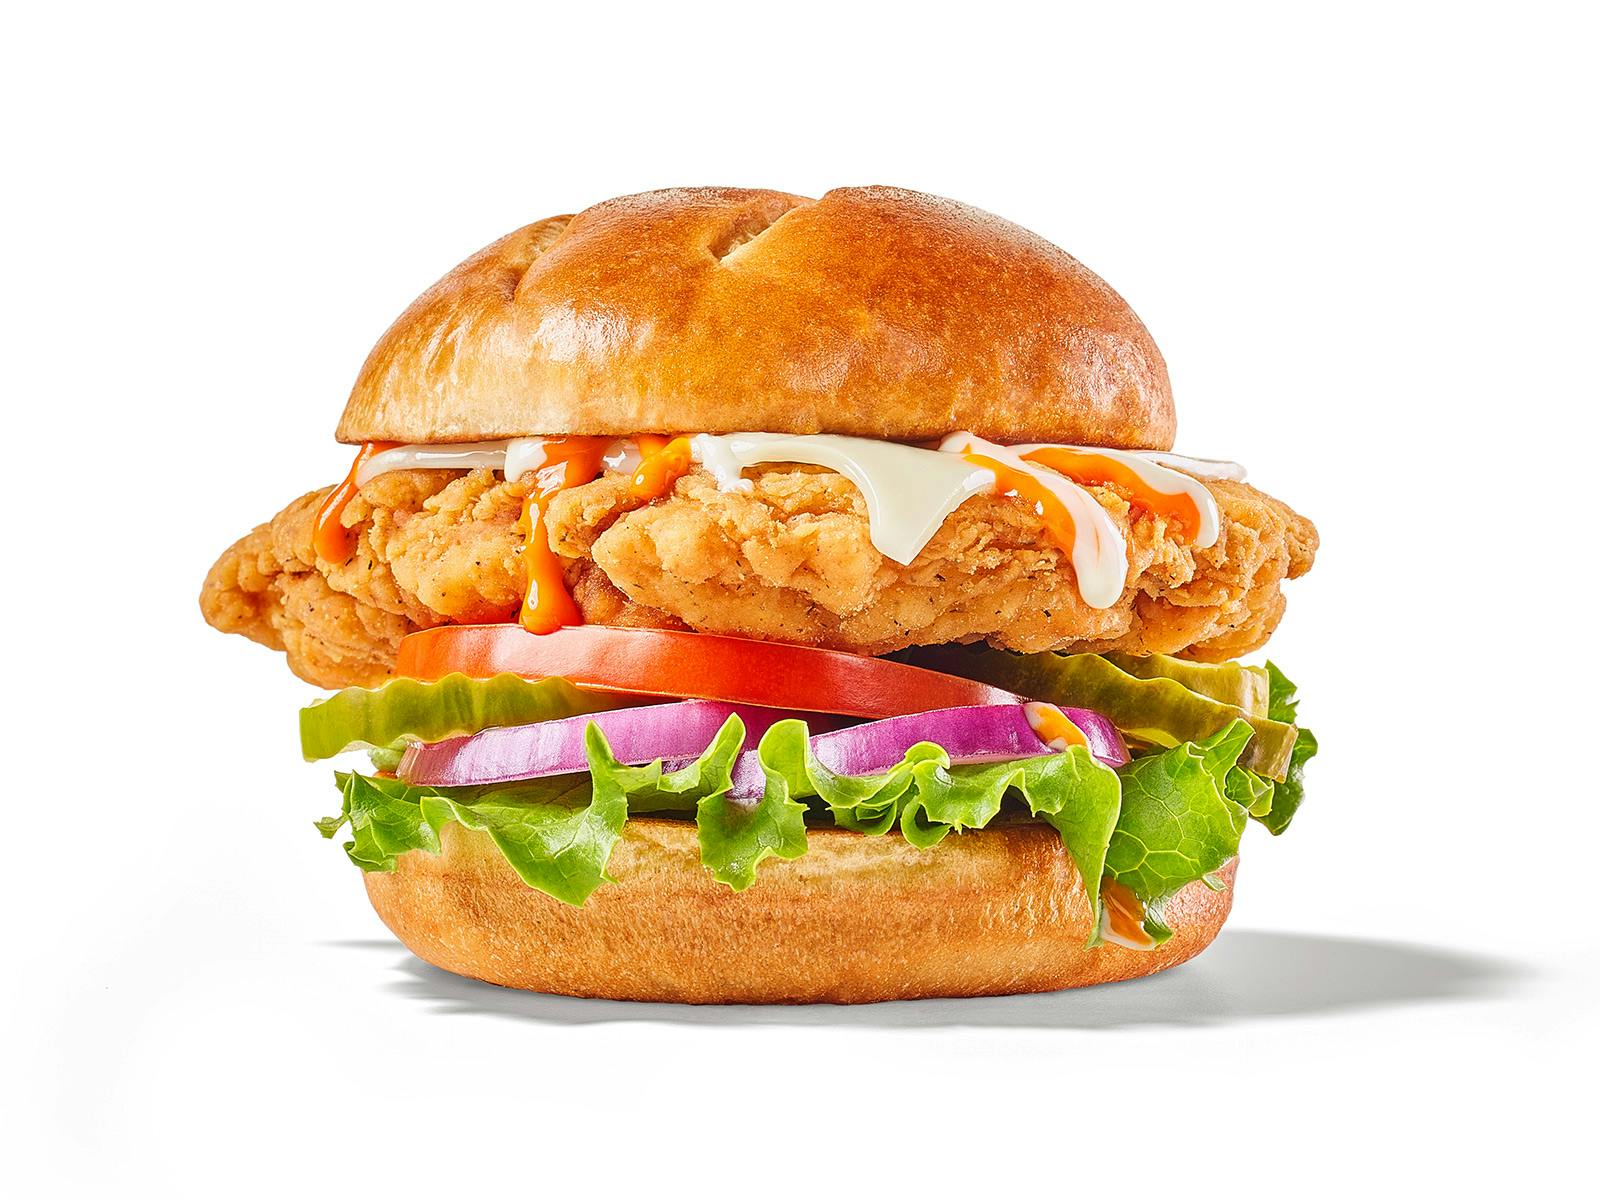 Buffalo Ranch Chicken Sandwich from Buffalo Wild Wings (149) - Topeka in Topeka, KS